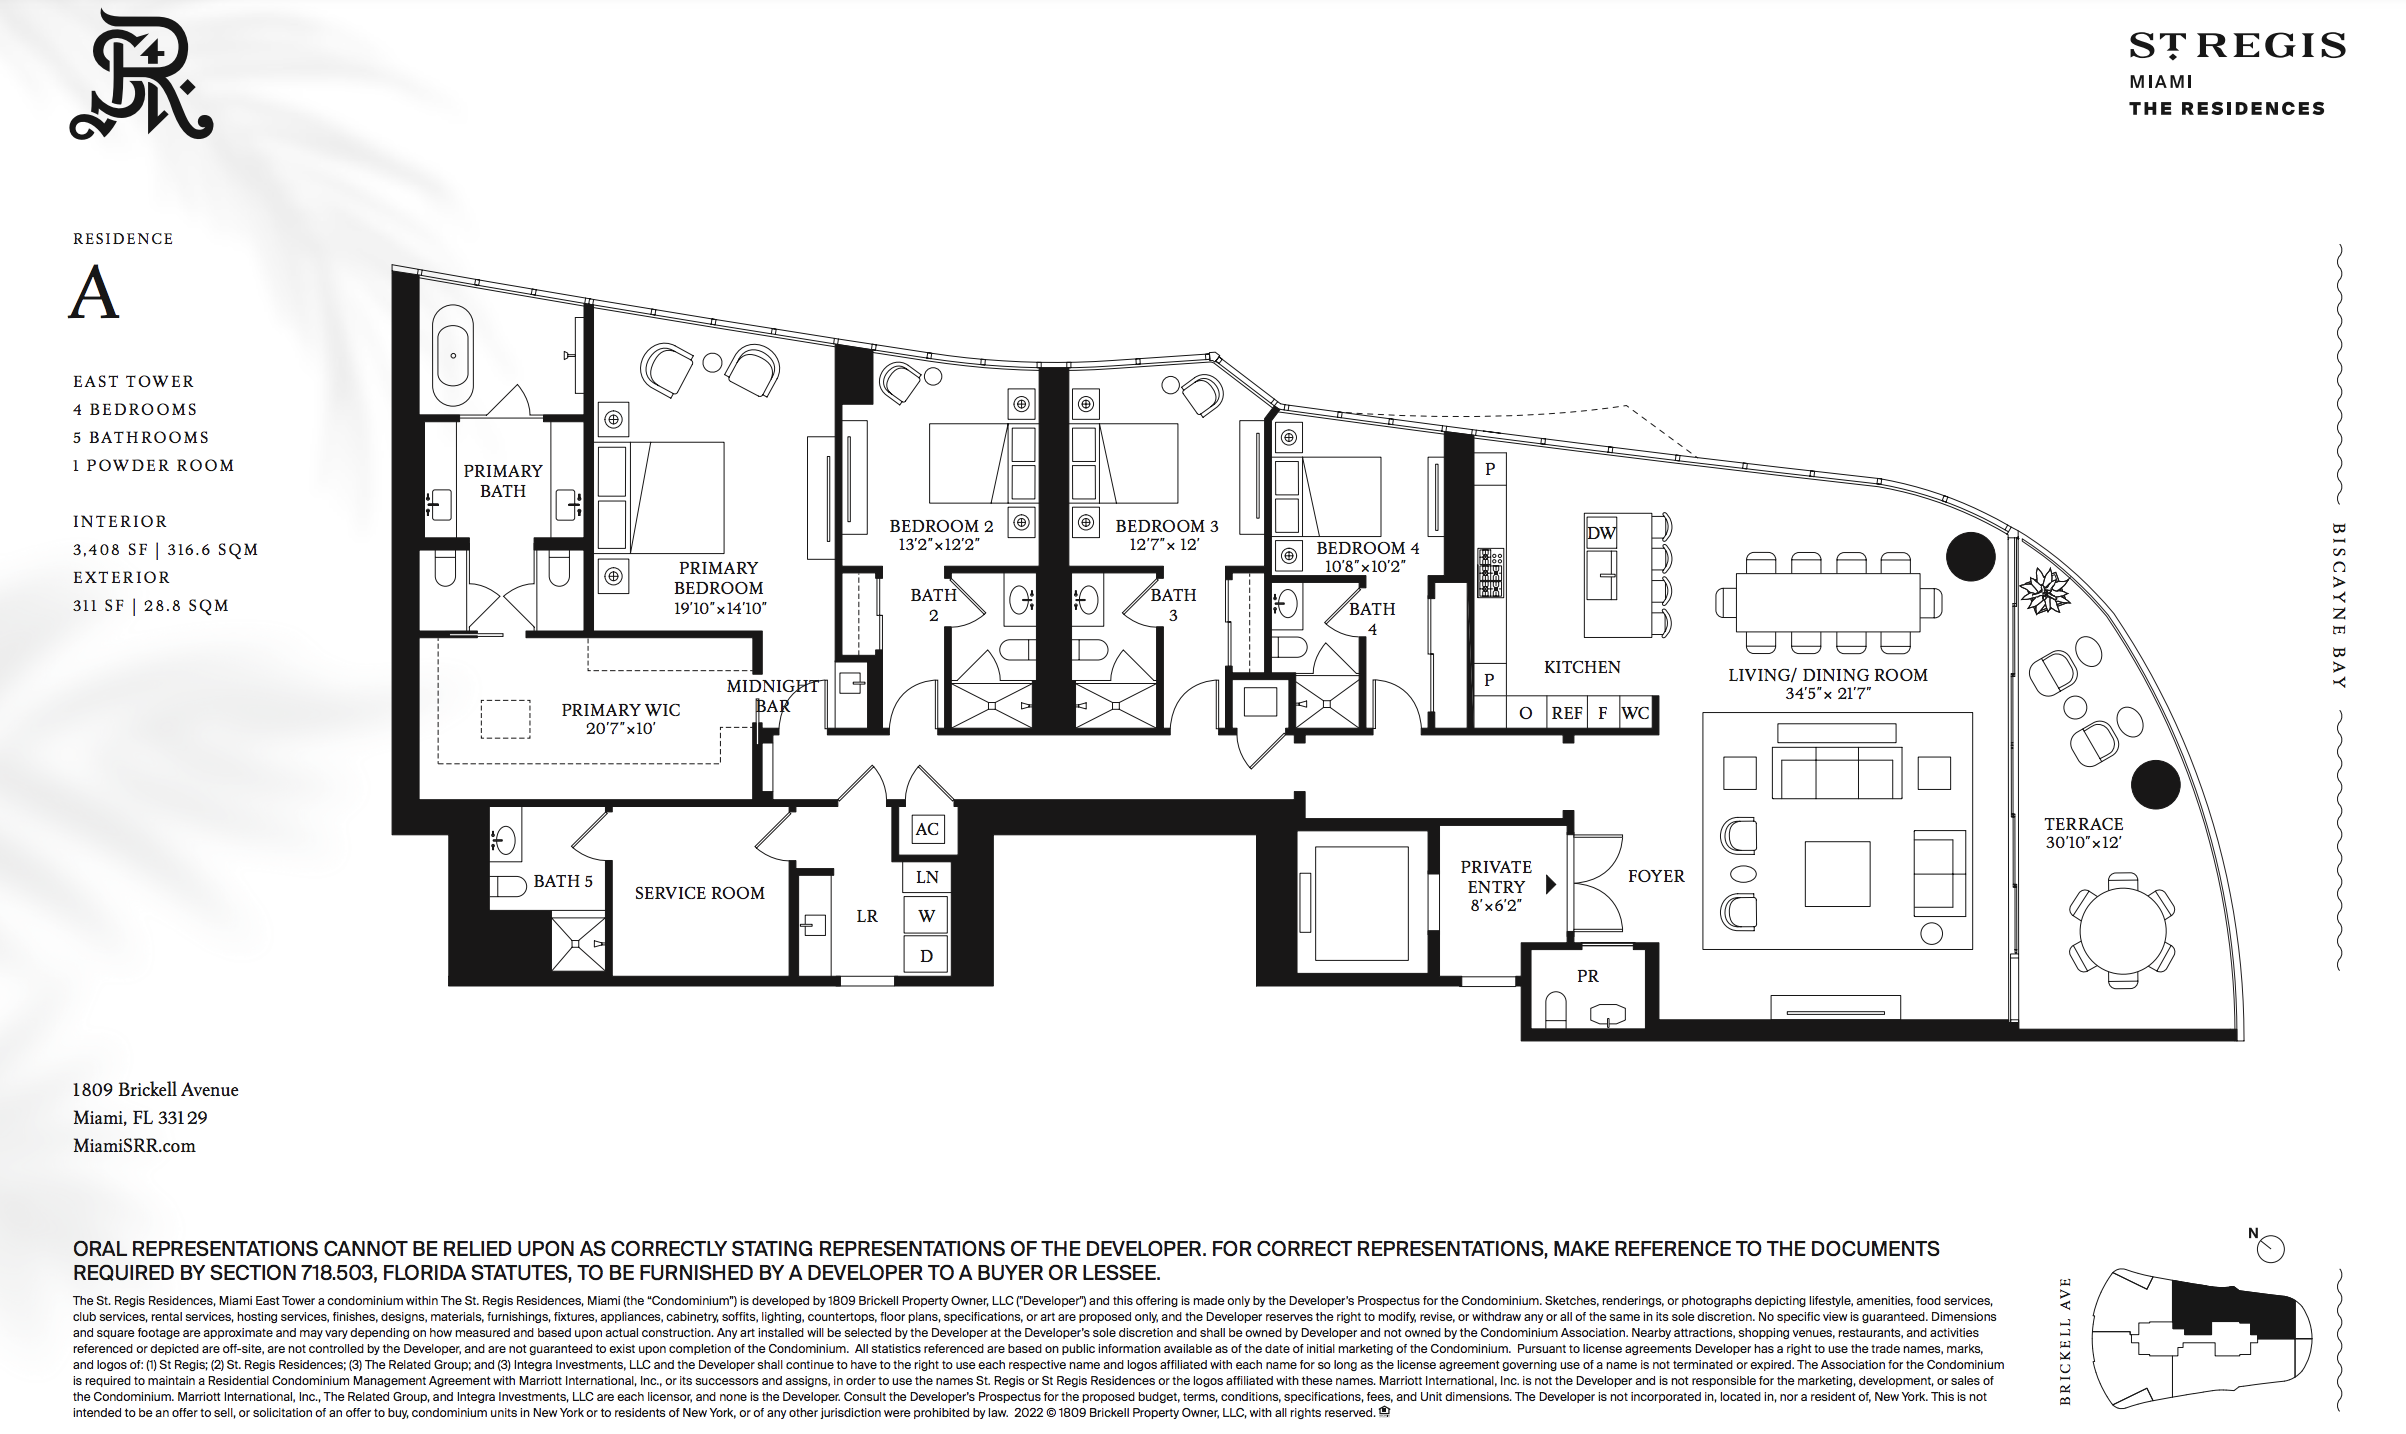 St Regis Brickell  A-Line. 4 Bedrooms | 5.5 Bathrooms 3,408 Interior SF | 311 SF Exterior